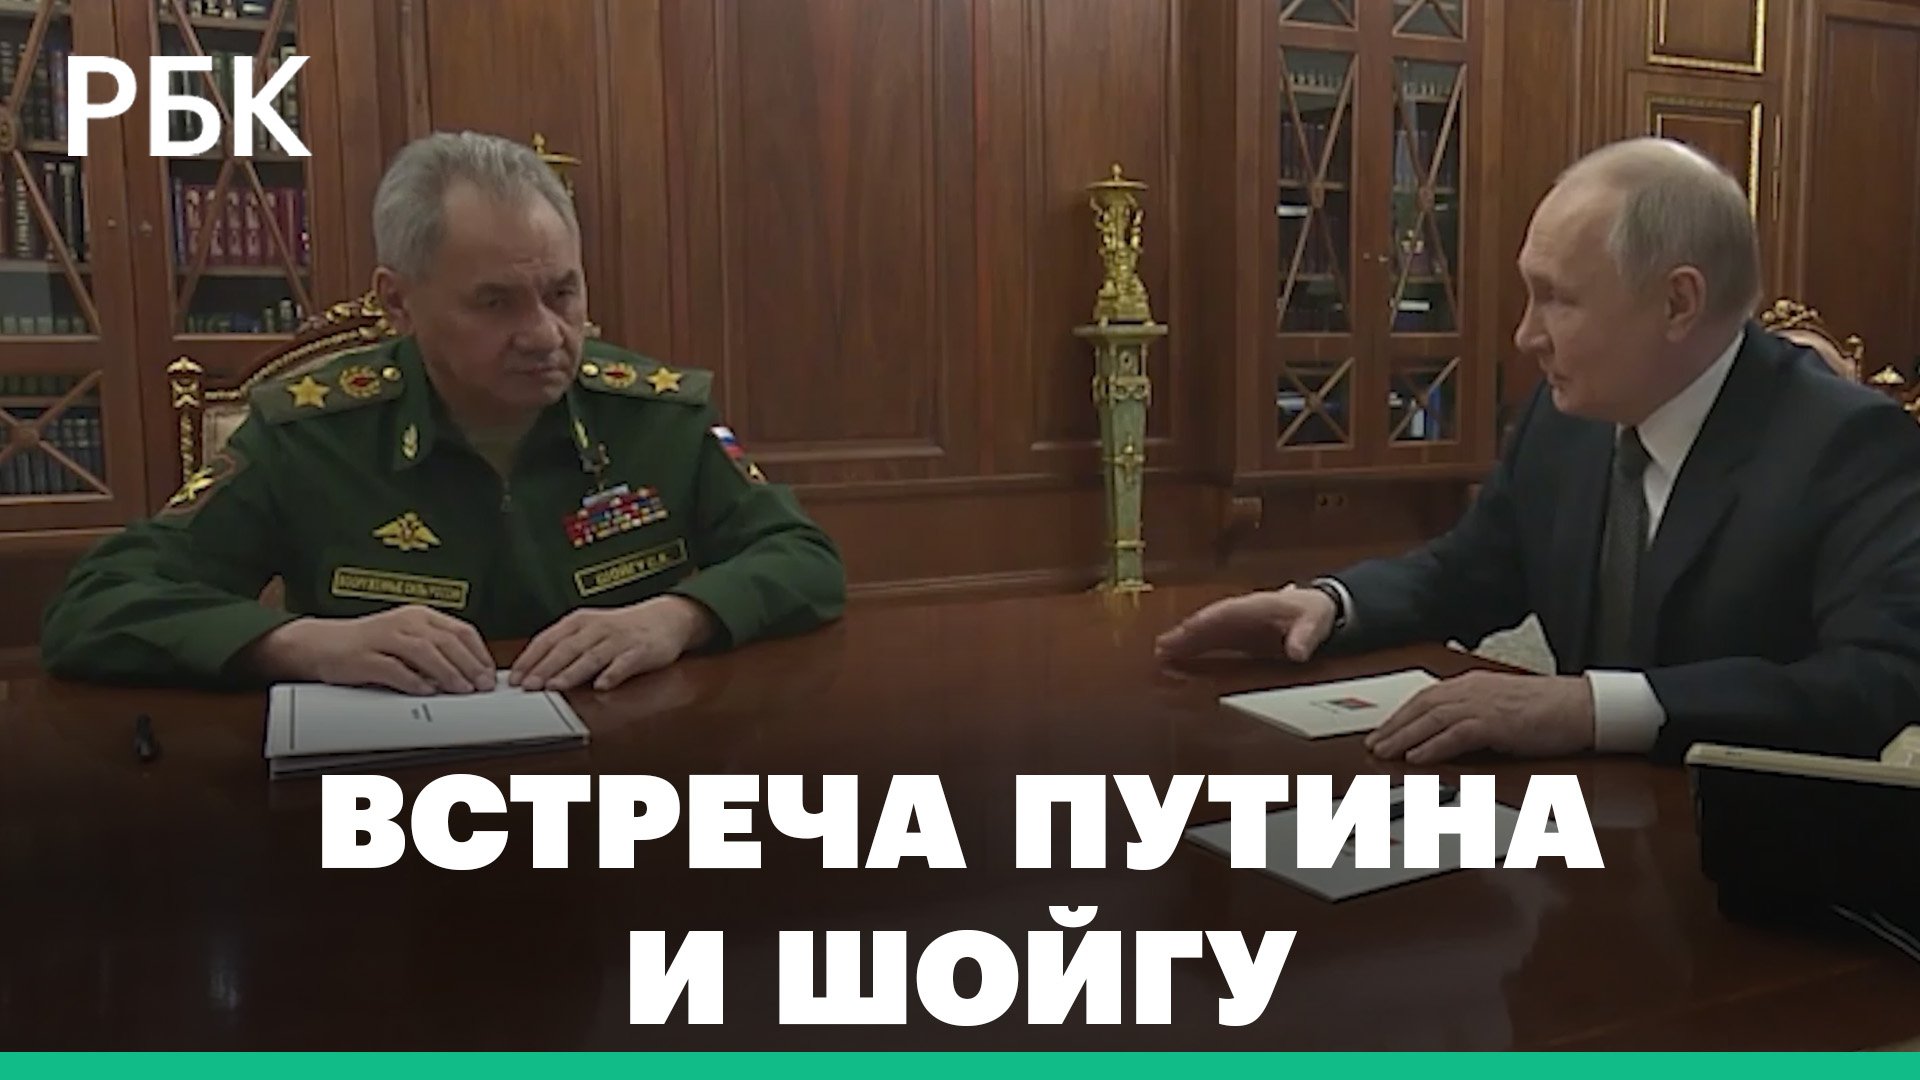 Перед посещением форума АСИ Владимир Путин провёл встречу с Министром обороны Сергеем Шойгу